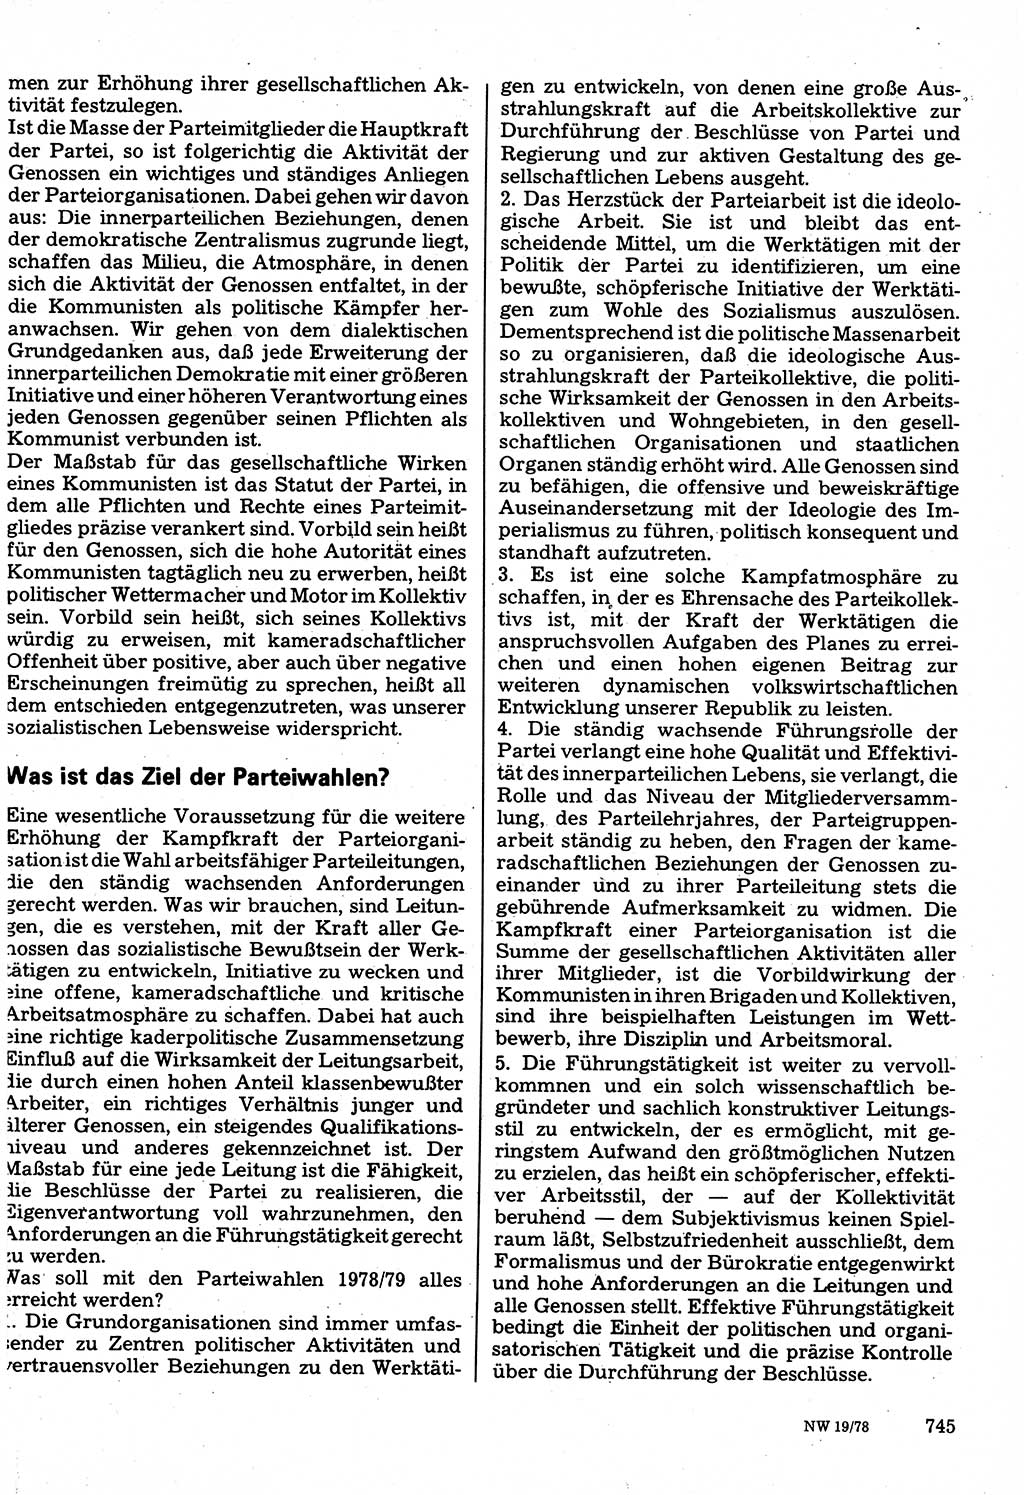 Neuer Weg (NW), Organ des Zentralkomitees (ZK) der SED (Sozialistische Einheitspartei Deutschlands) für Fragen des Parteilebens, 33. Jahrgang [Deutsche Demokratische Republik (DDR)] 1978, Seite 745 (NW ZK SED DDR 1978, S. 745)